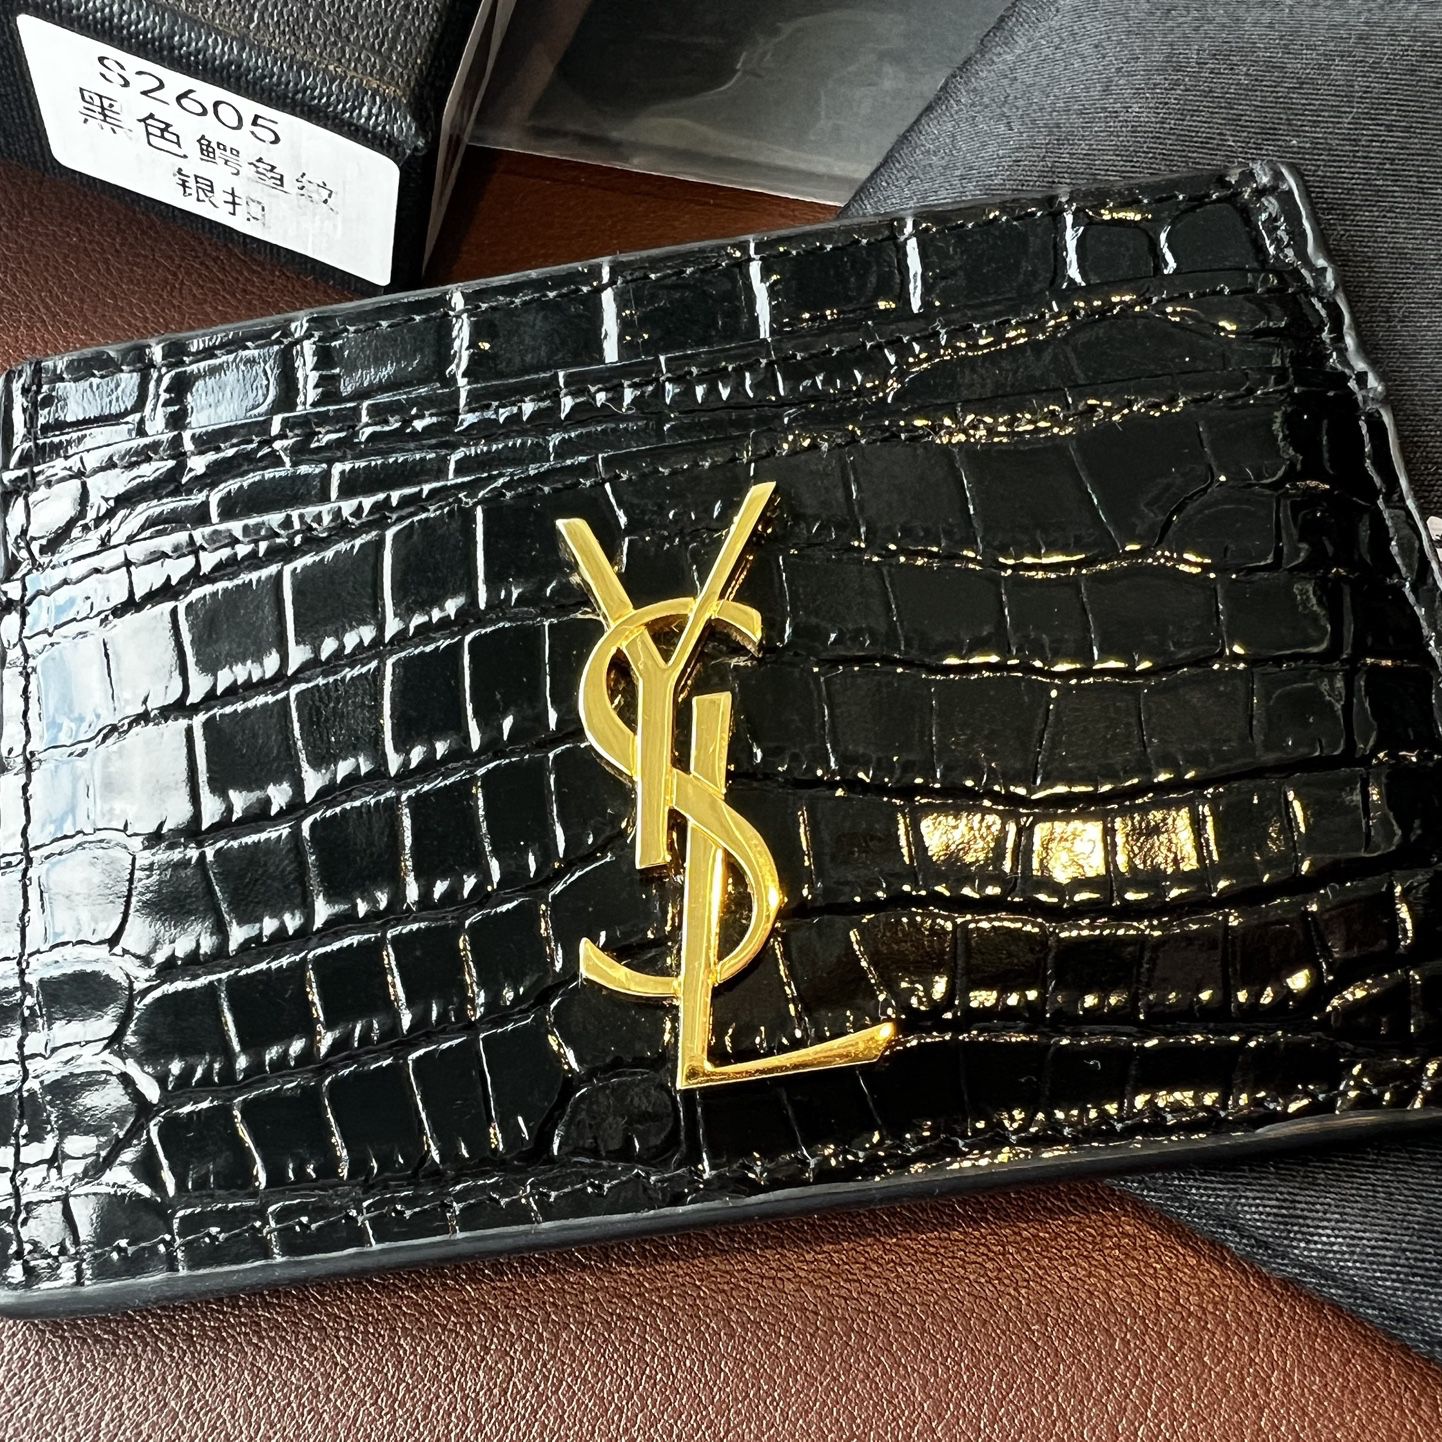 Y S L Black Crocodile Cardholder With Gold Emblem for Sale in Scottsdale,  AZ - OfferUp